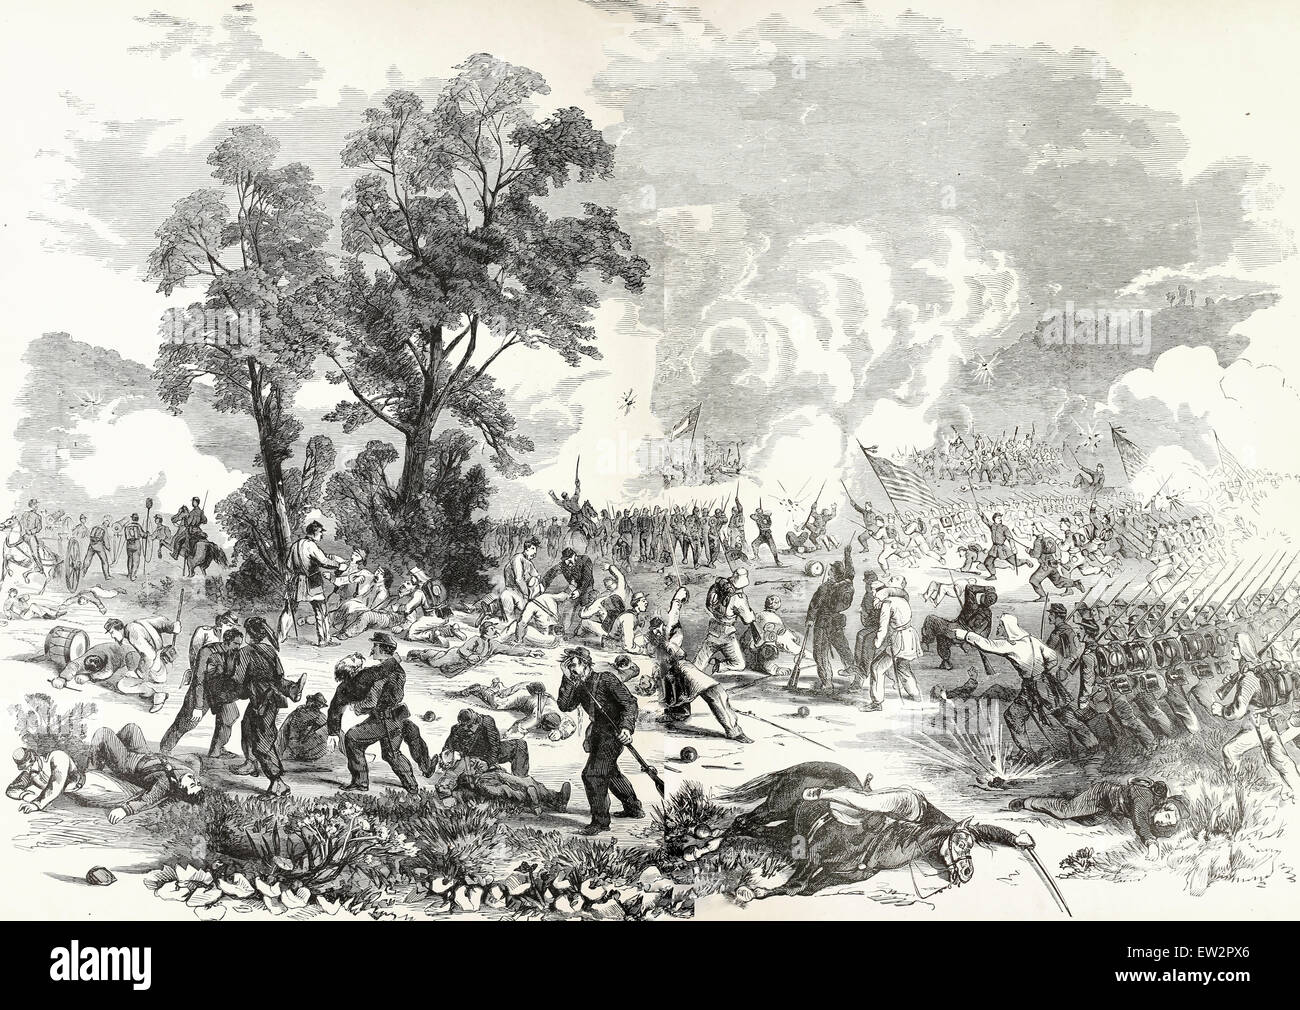 Schlacht des ersten am Bull Run, Virginia. 21. Juli 1861 zwischen der Eidgenössischen Armee unter dem Kommando von General McDowell und der Armee der Konföderierten unter dem Kommando von Generälen Beauregard und Johnston - USA Bürgerkrieg Stockfoto